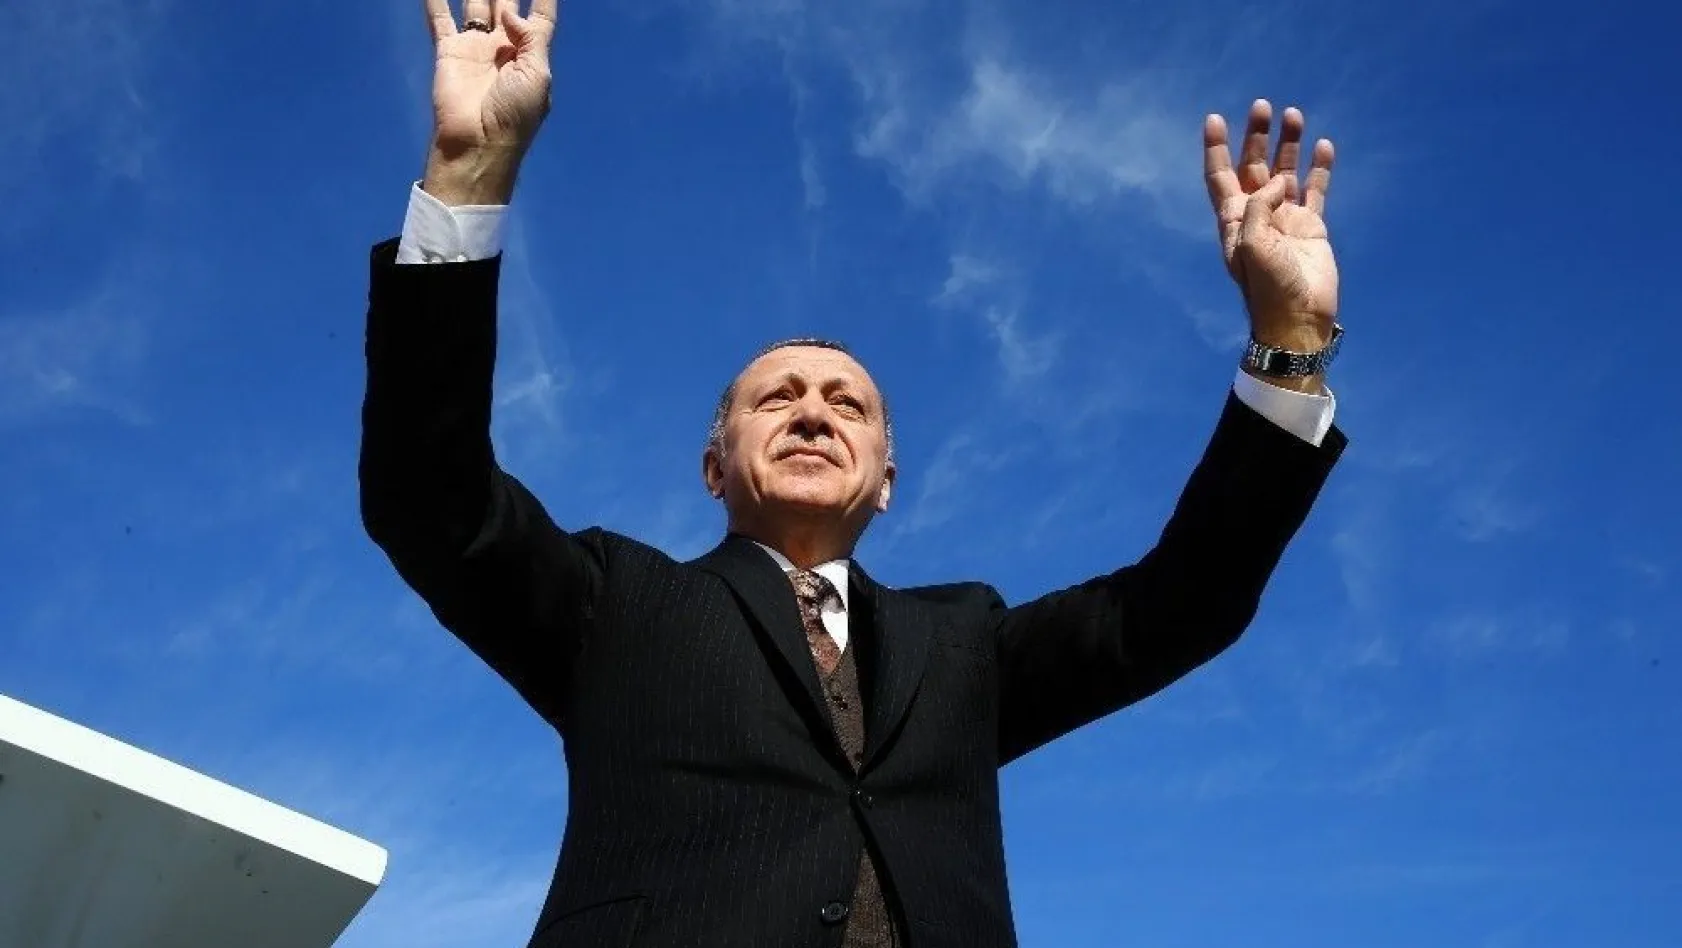 Cumhurbaşkanı Erdoğan: 'Bize kardeşliği çok gördüler ama sabrettik ve zafere ulaştık'
